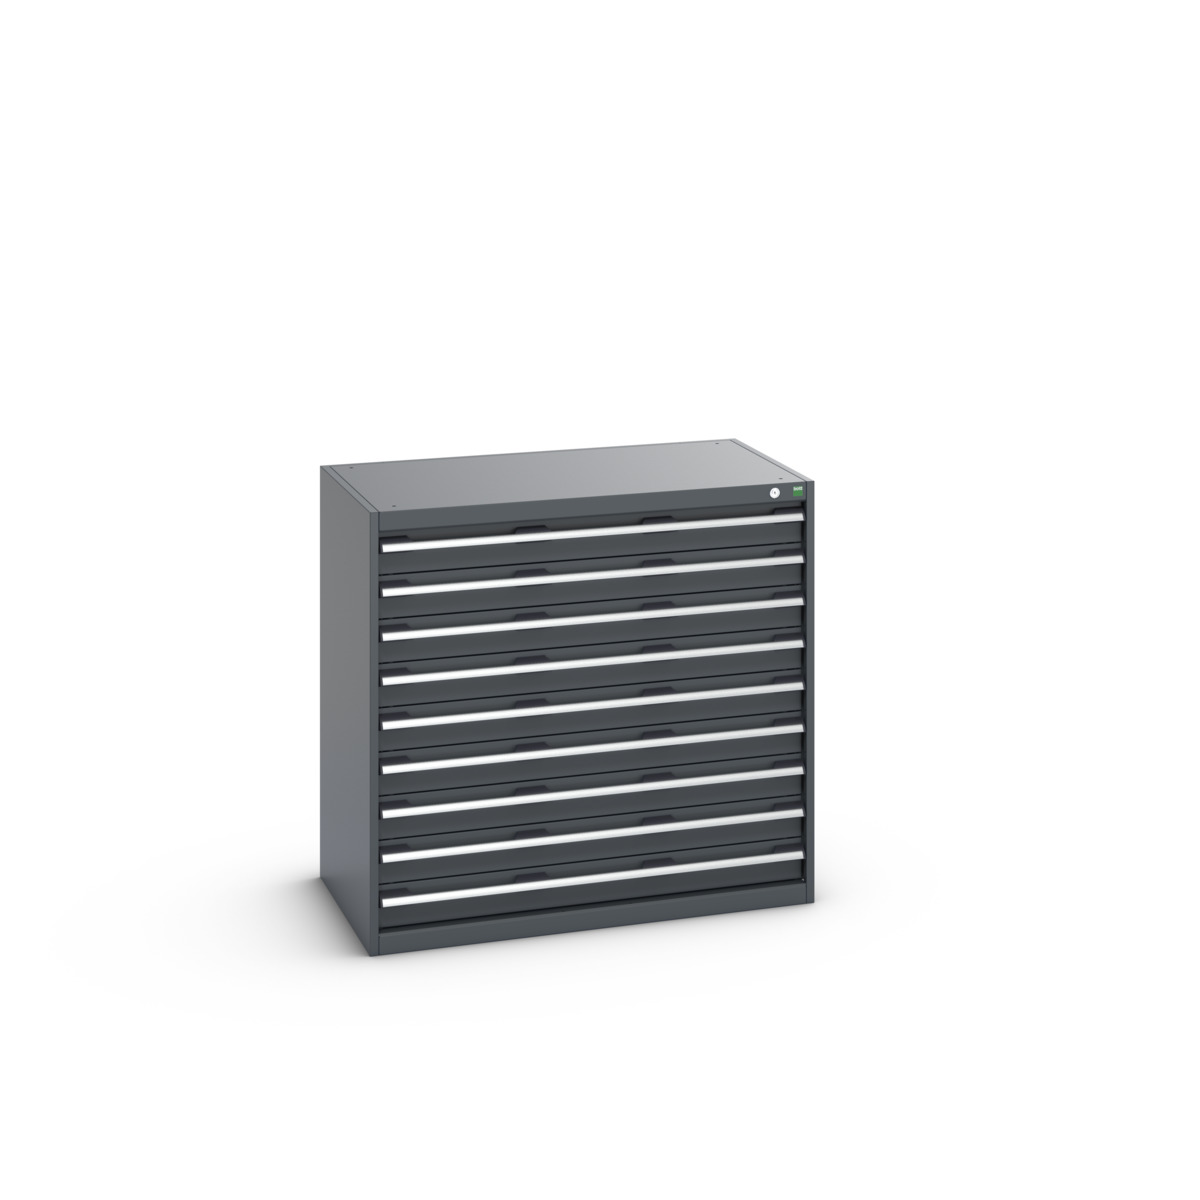 40021035.77V - cubio drawer cabinet